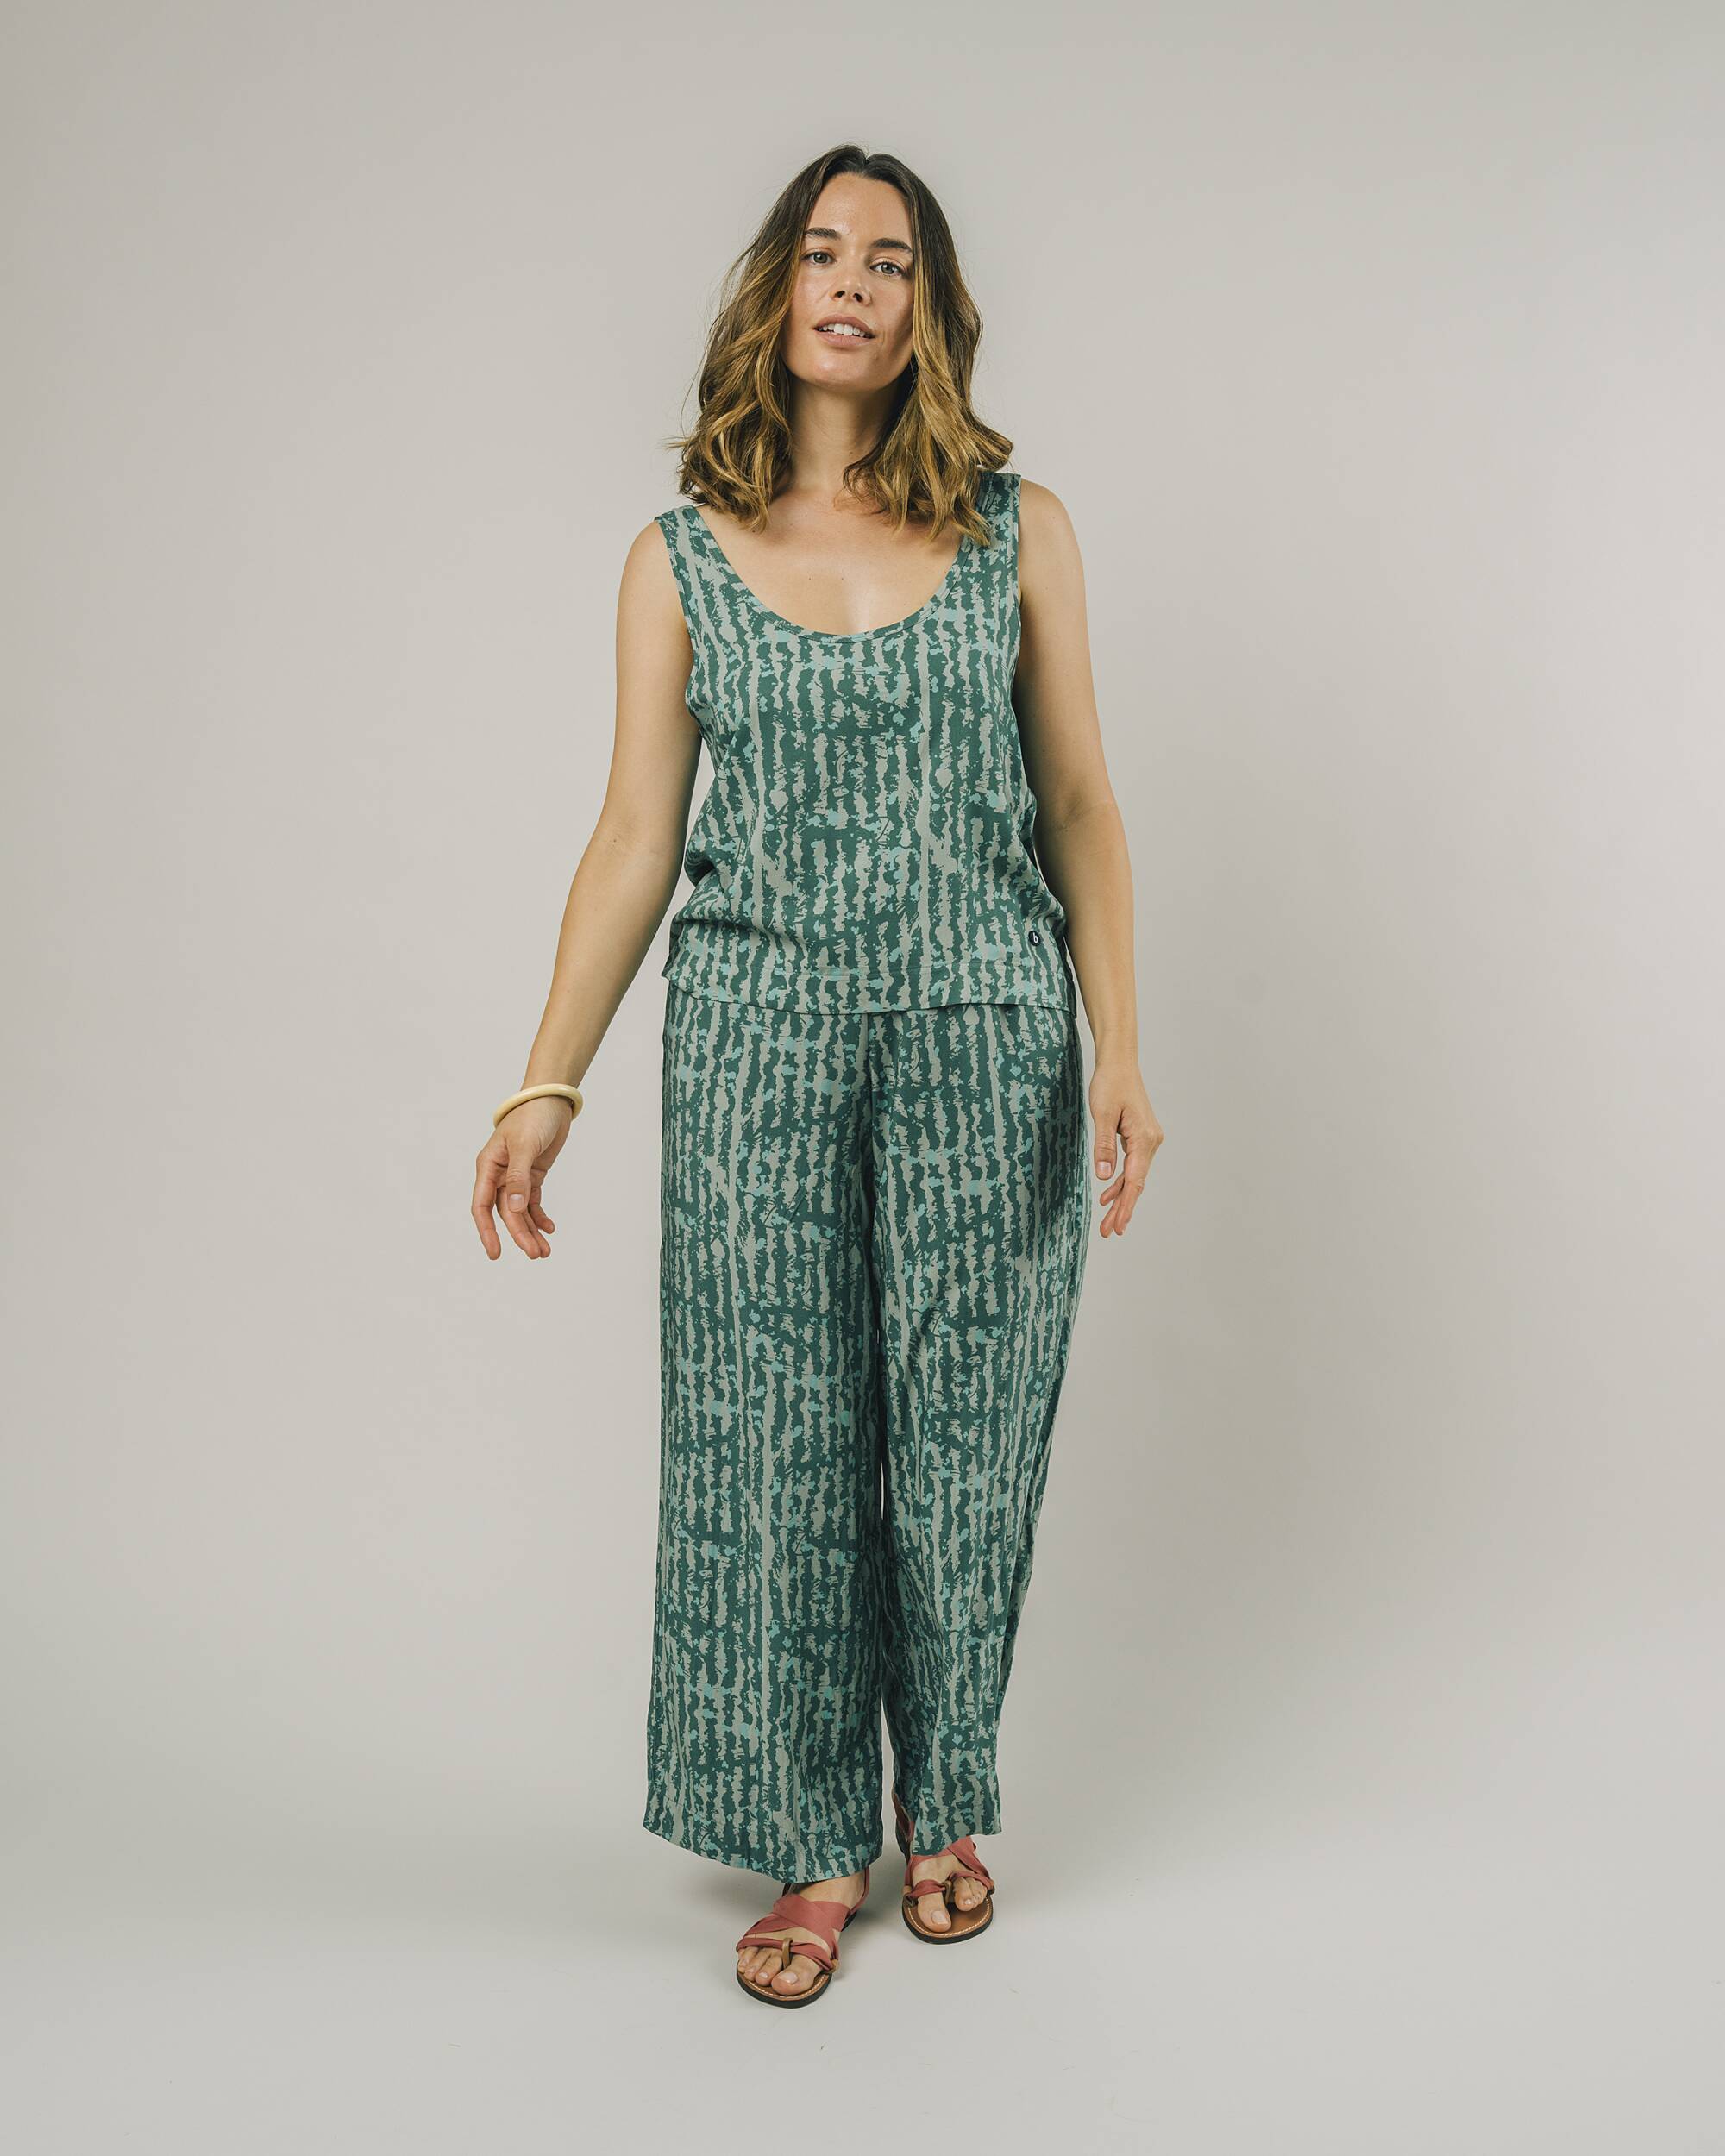 Brava Fabrics Samarretes Watermelon Tank Top Verd moda sostenible moda ètica